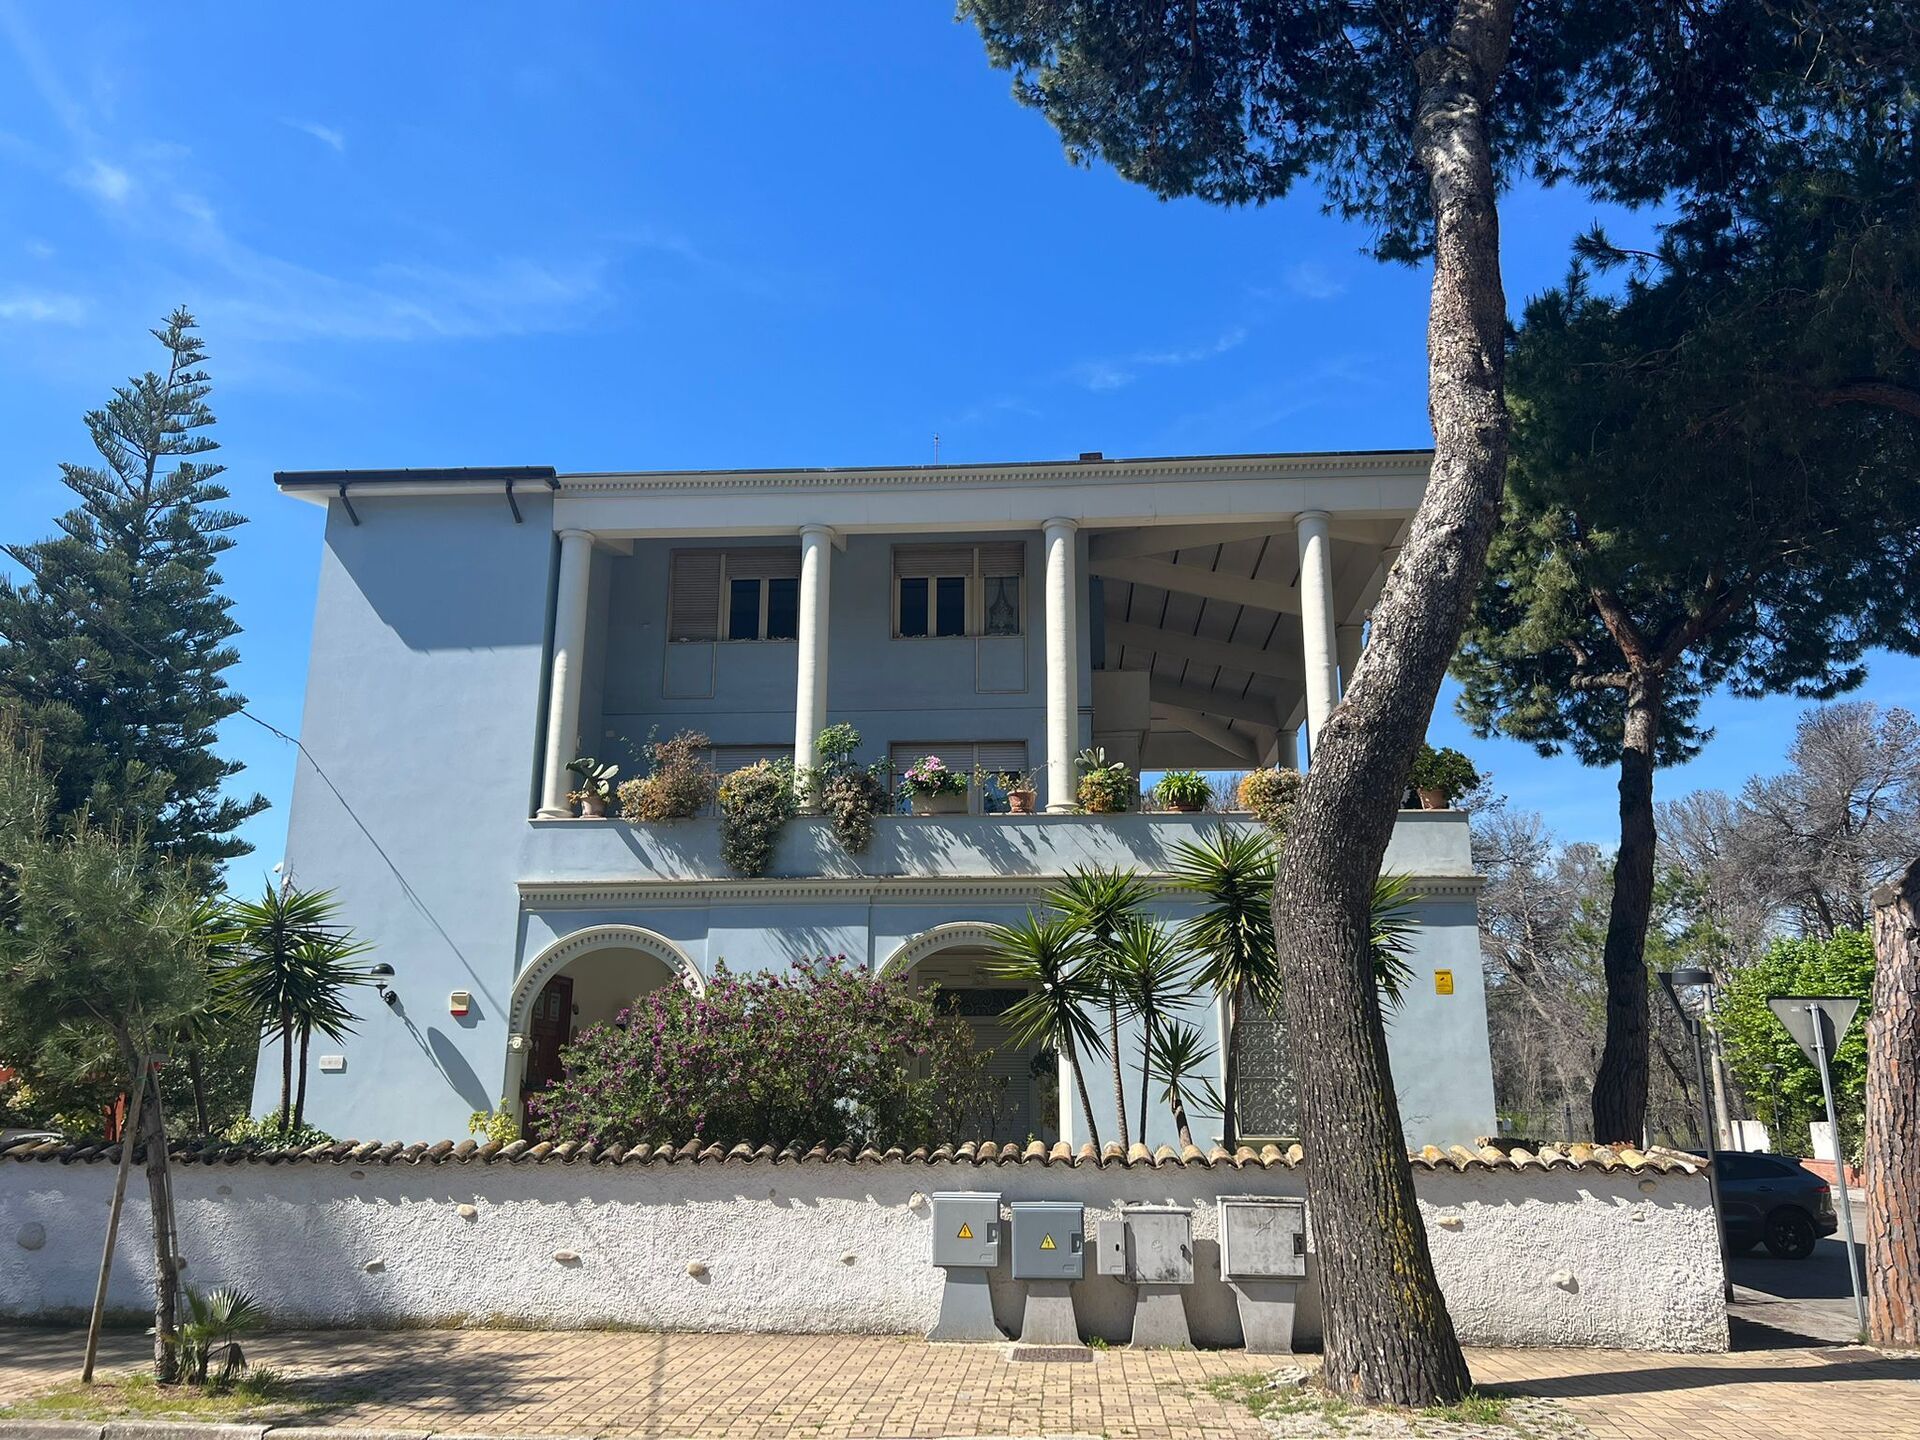 For sale villa by the sea Pescara Abruzzo